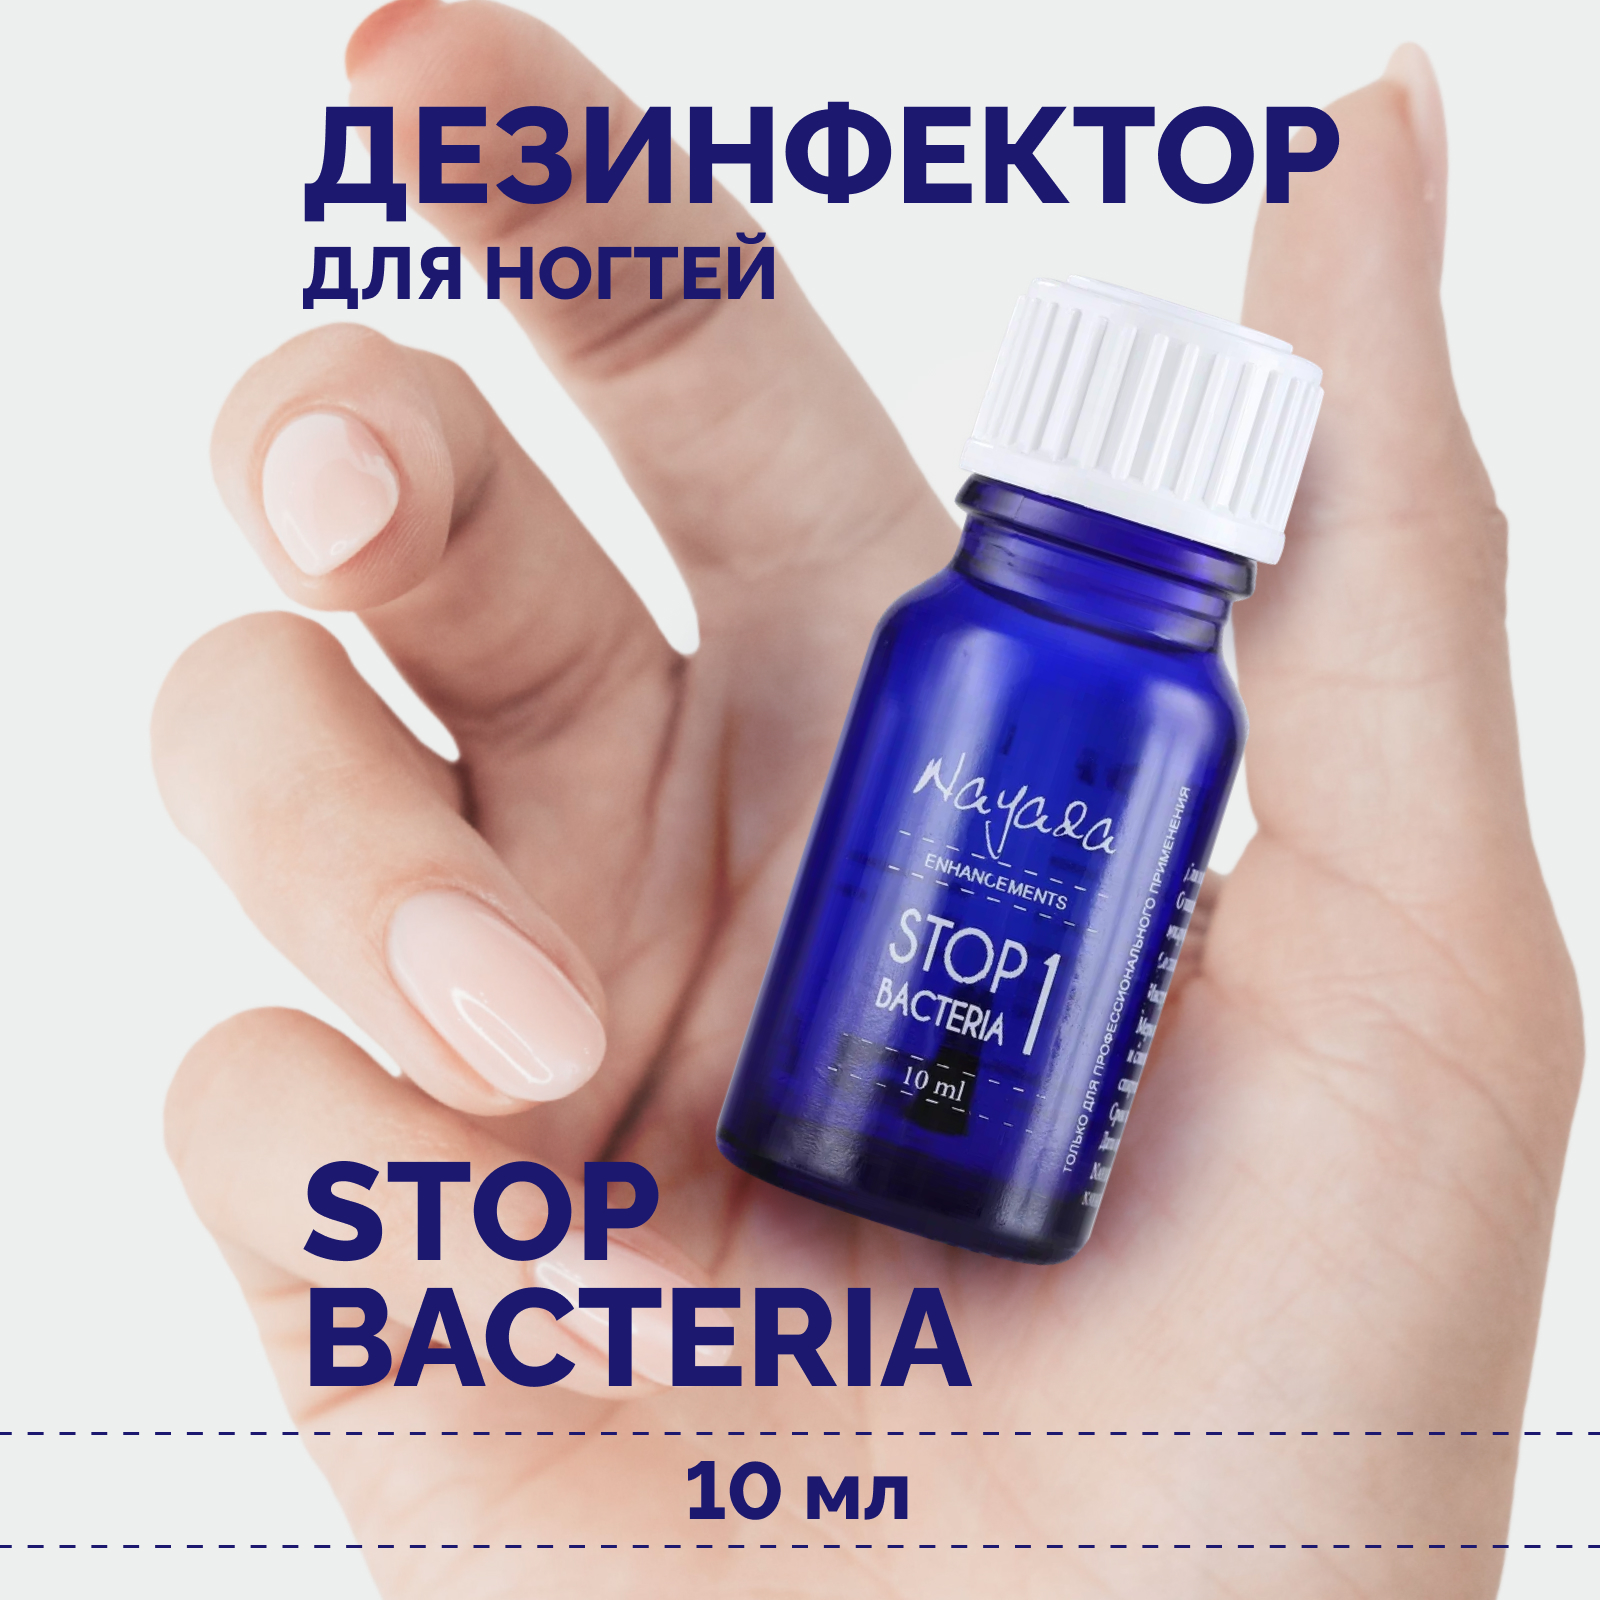 Дезинфектор для ногтей Nayada Стоп бактерия профилактика грибка и бактерий, 10 мл